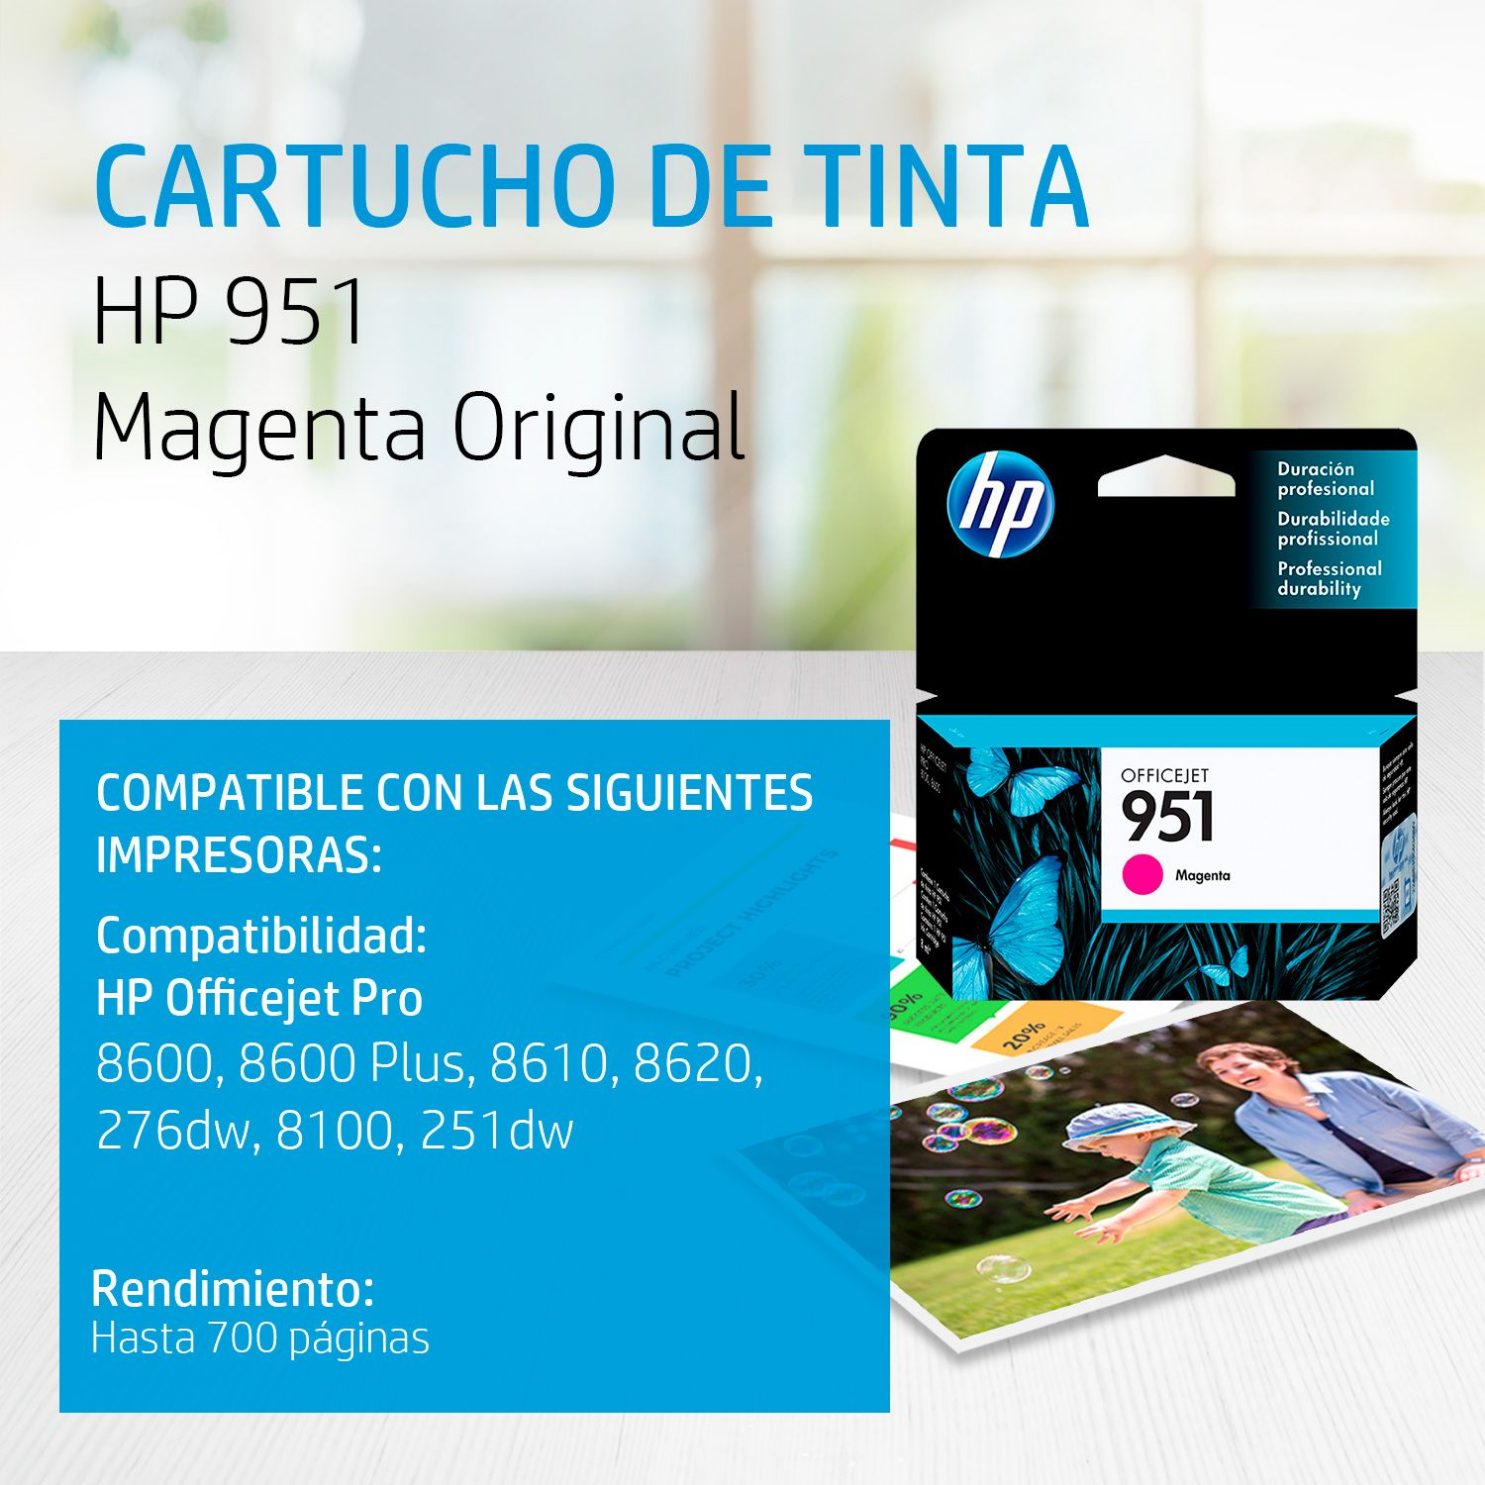 Cartucho de tinta HP 951 Magenta (CN051AL) OfficeJet 8100, 8600, 700 Pag.